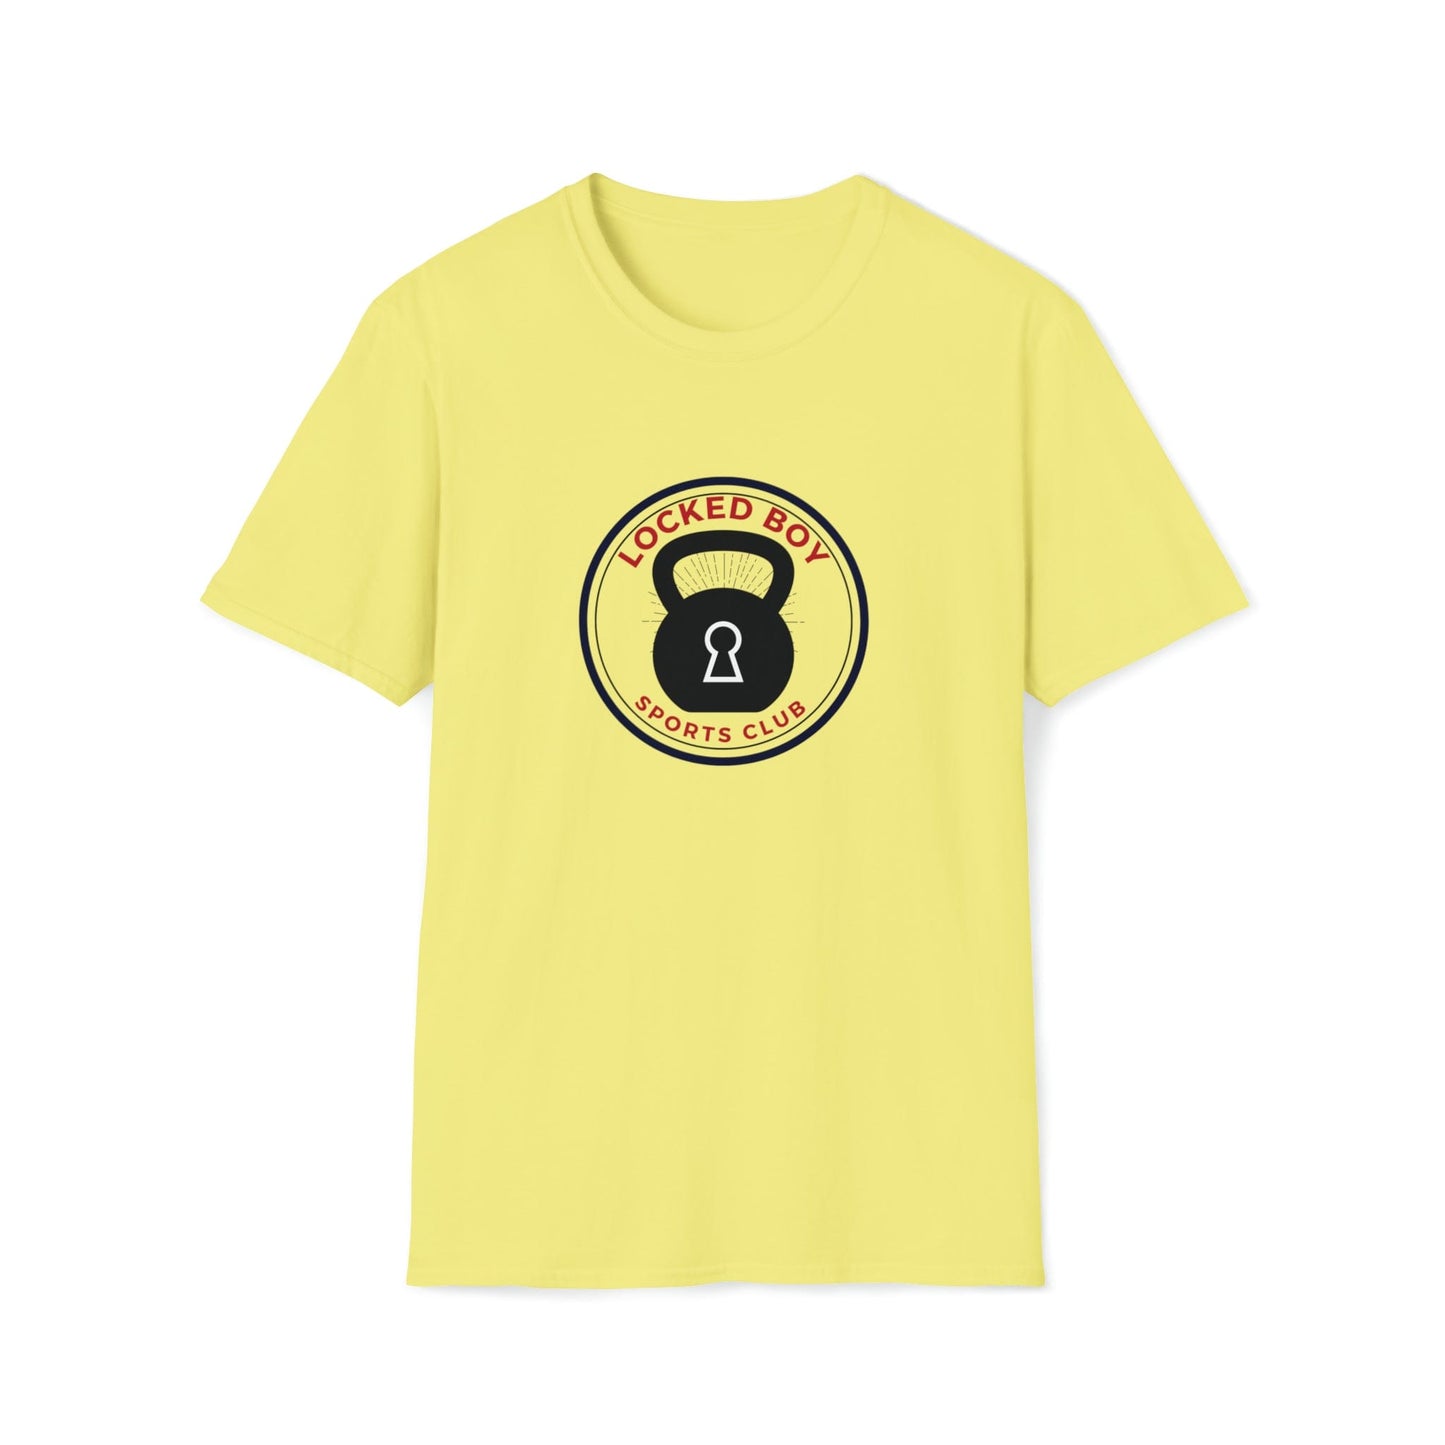 T-Shirt Cornsilk / S LockedBoy Sports Club - Chastity Tshirt Kettlebell LEATHERDADDY BATOR